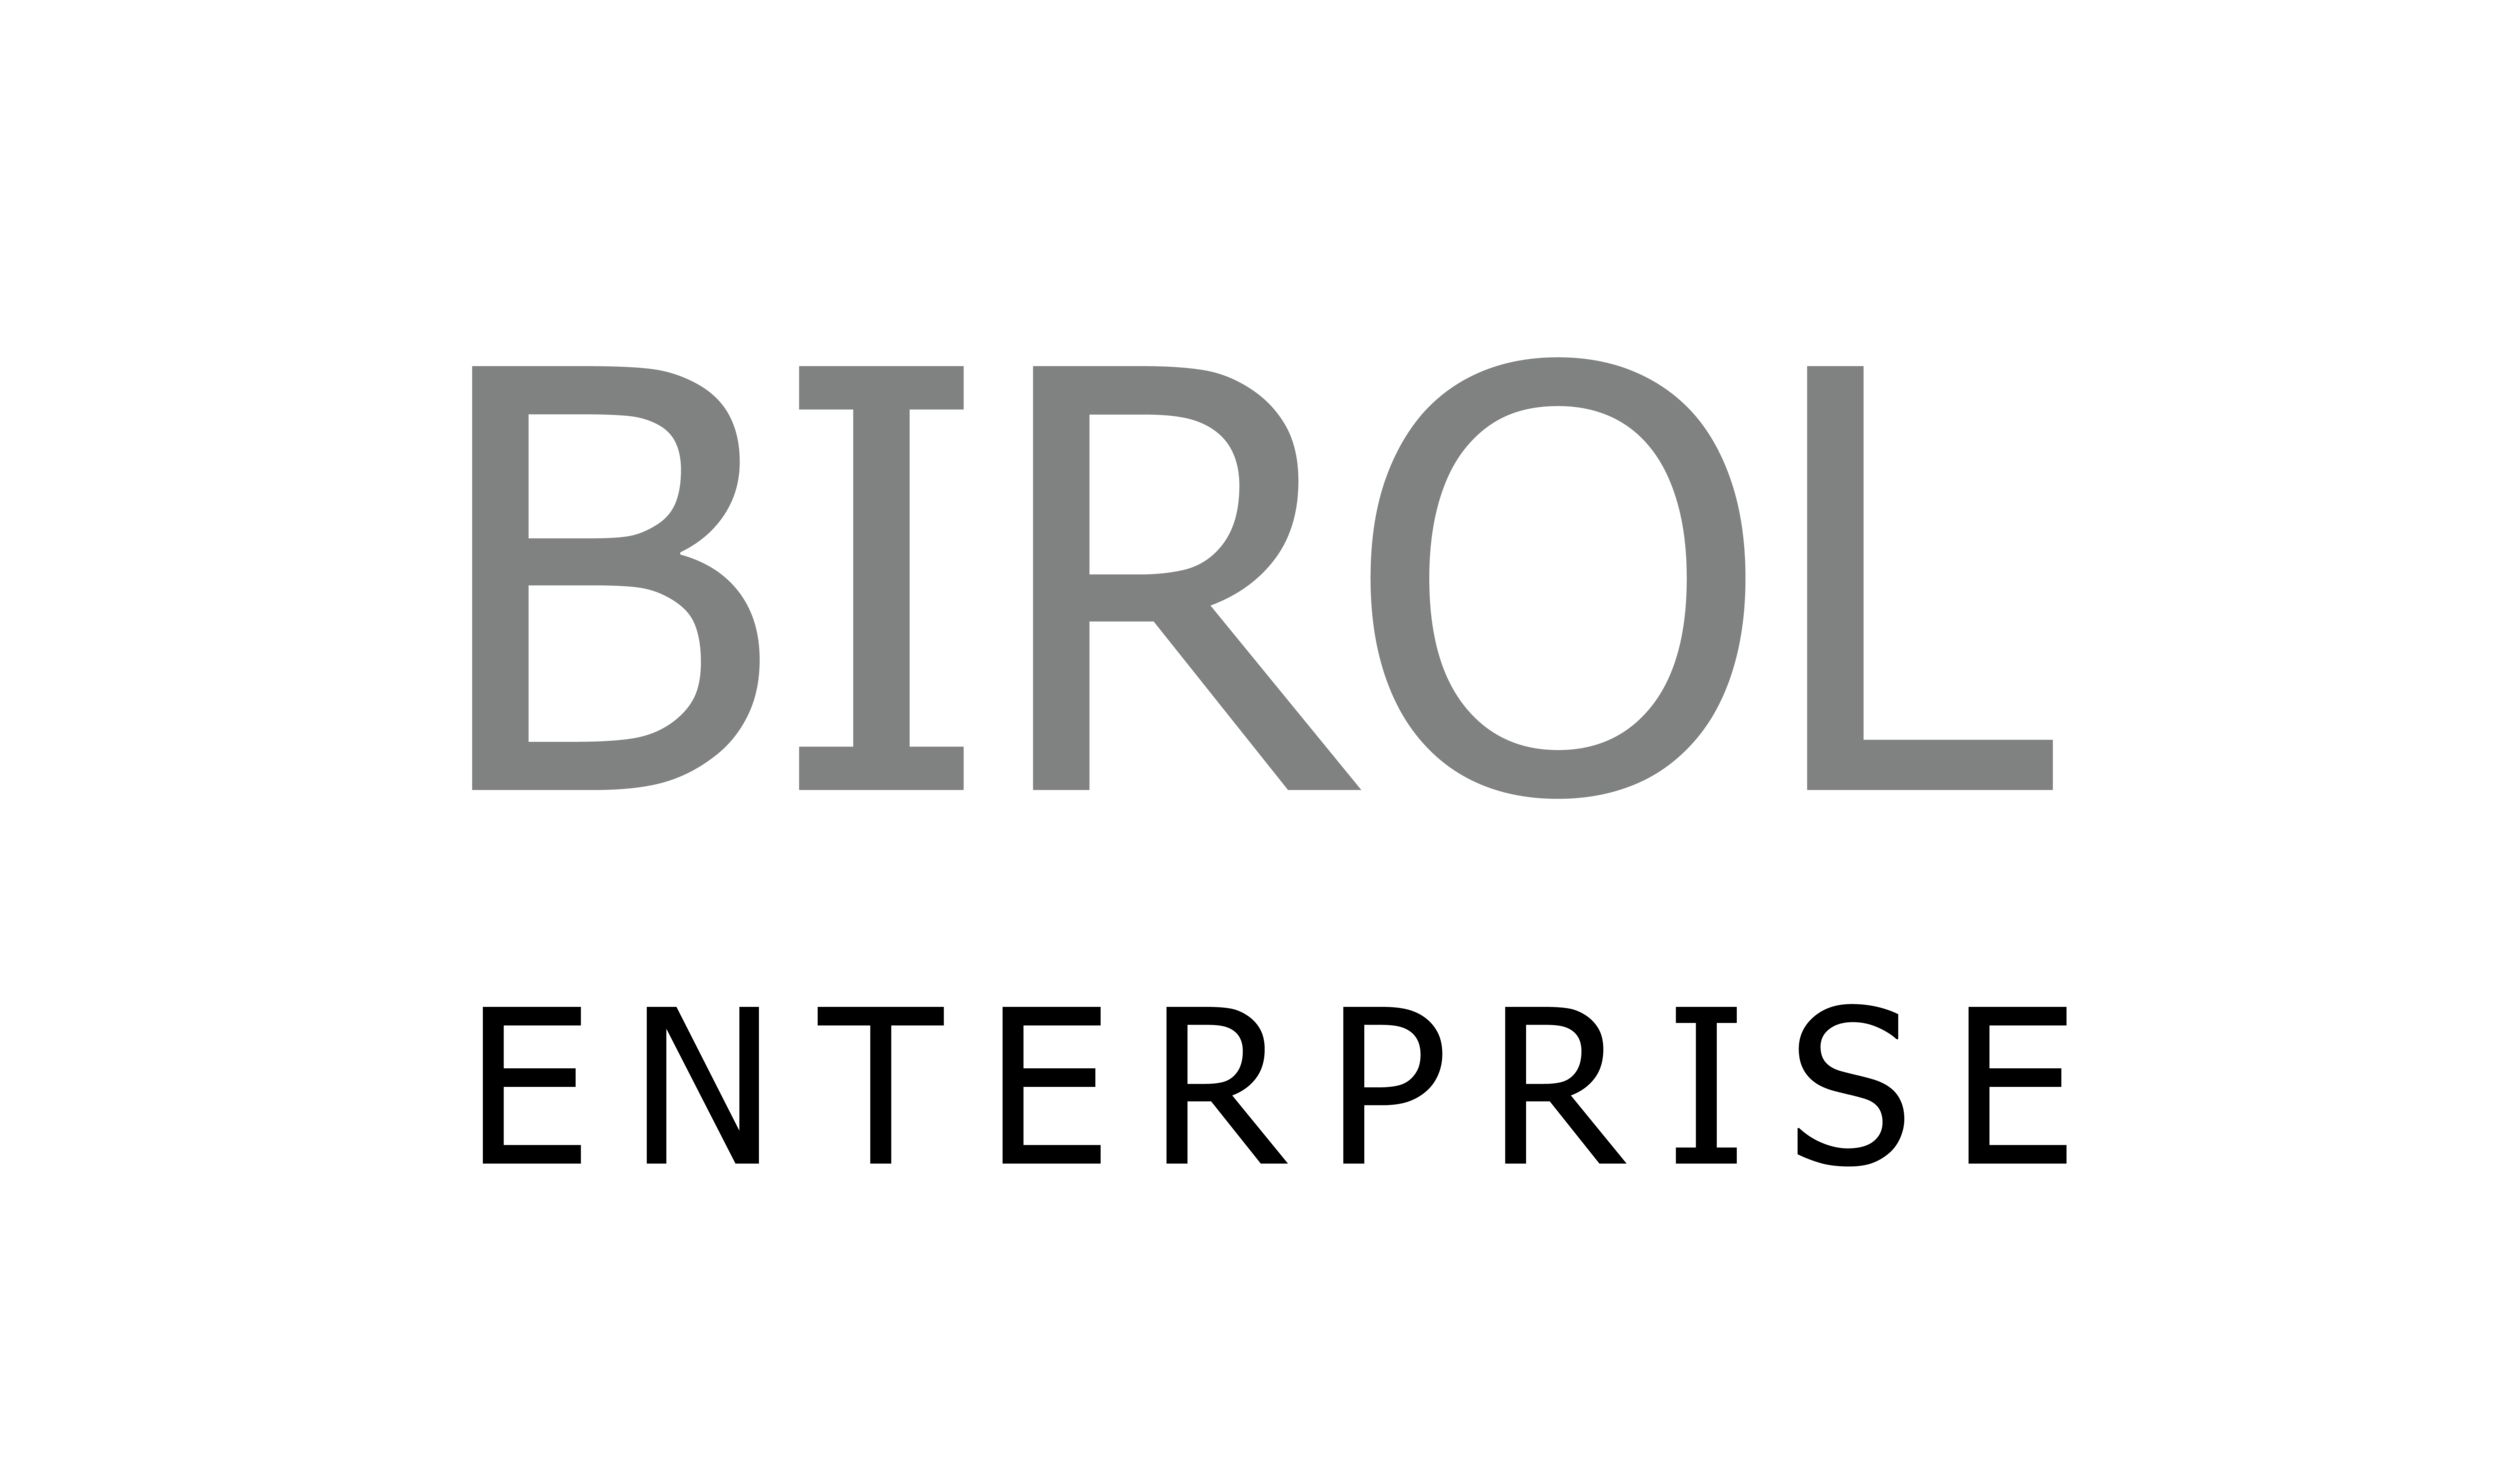 Birol-02.png